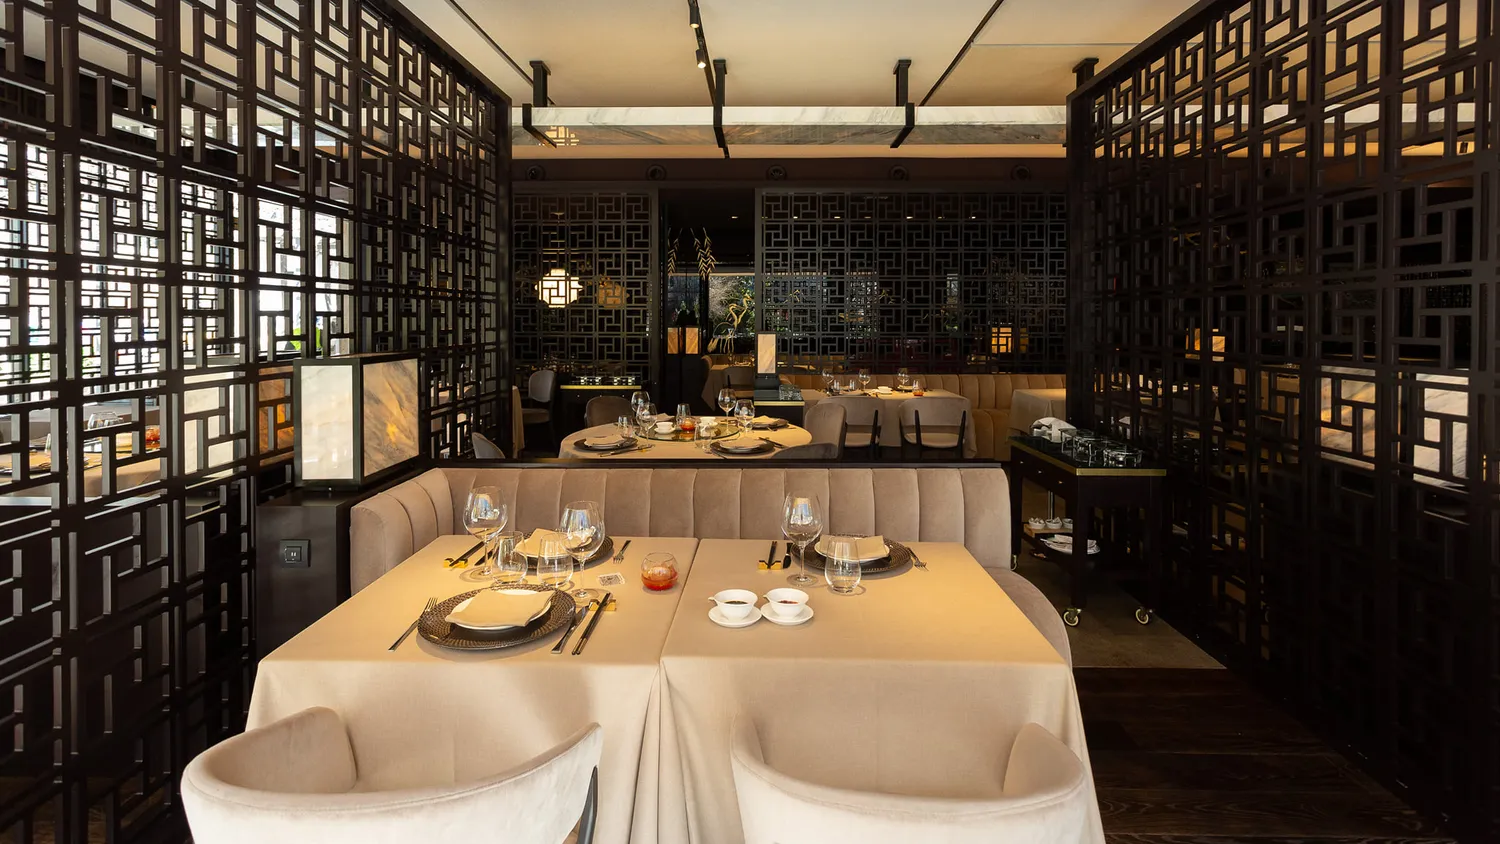 Reservation at TSE-YANG restaurant - Madrid | KEYS